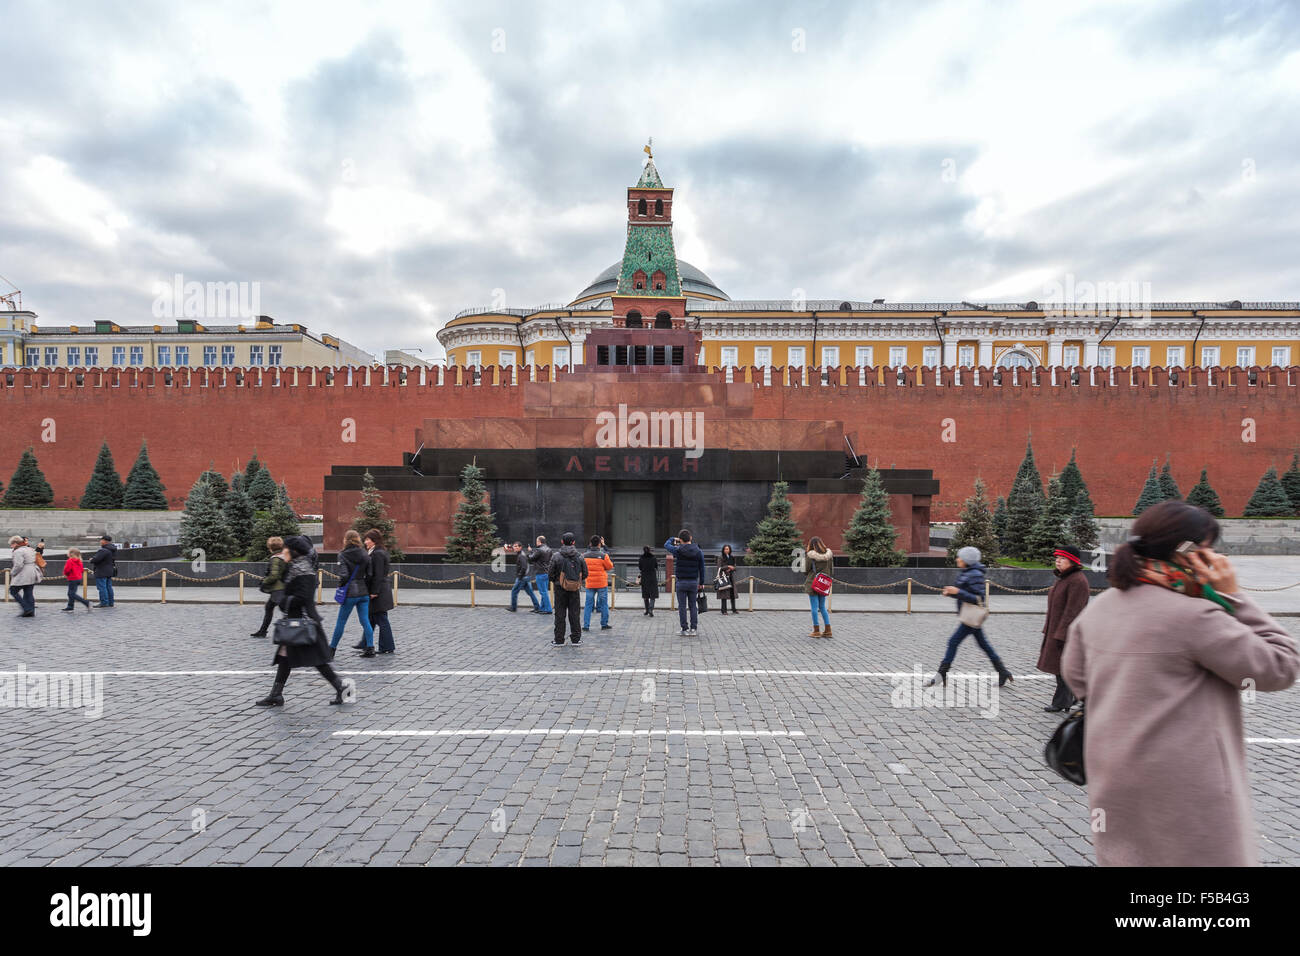 Moskau, Russland - 14. Oktober 2015: Moskauer Kreml und Roter Platz. Das Lenin-Mausoleum am Roten Platz und Passanten. Stockfoto